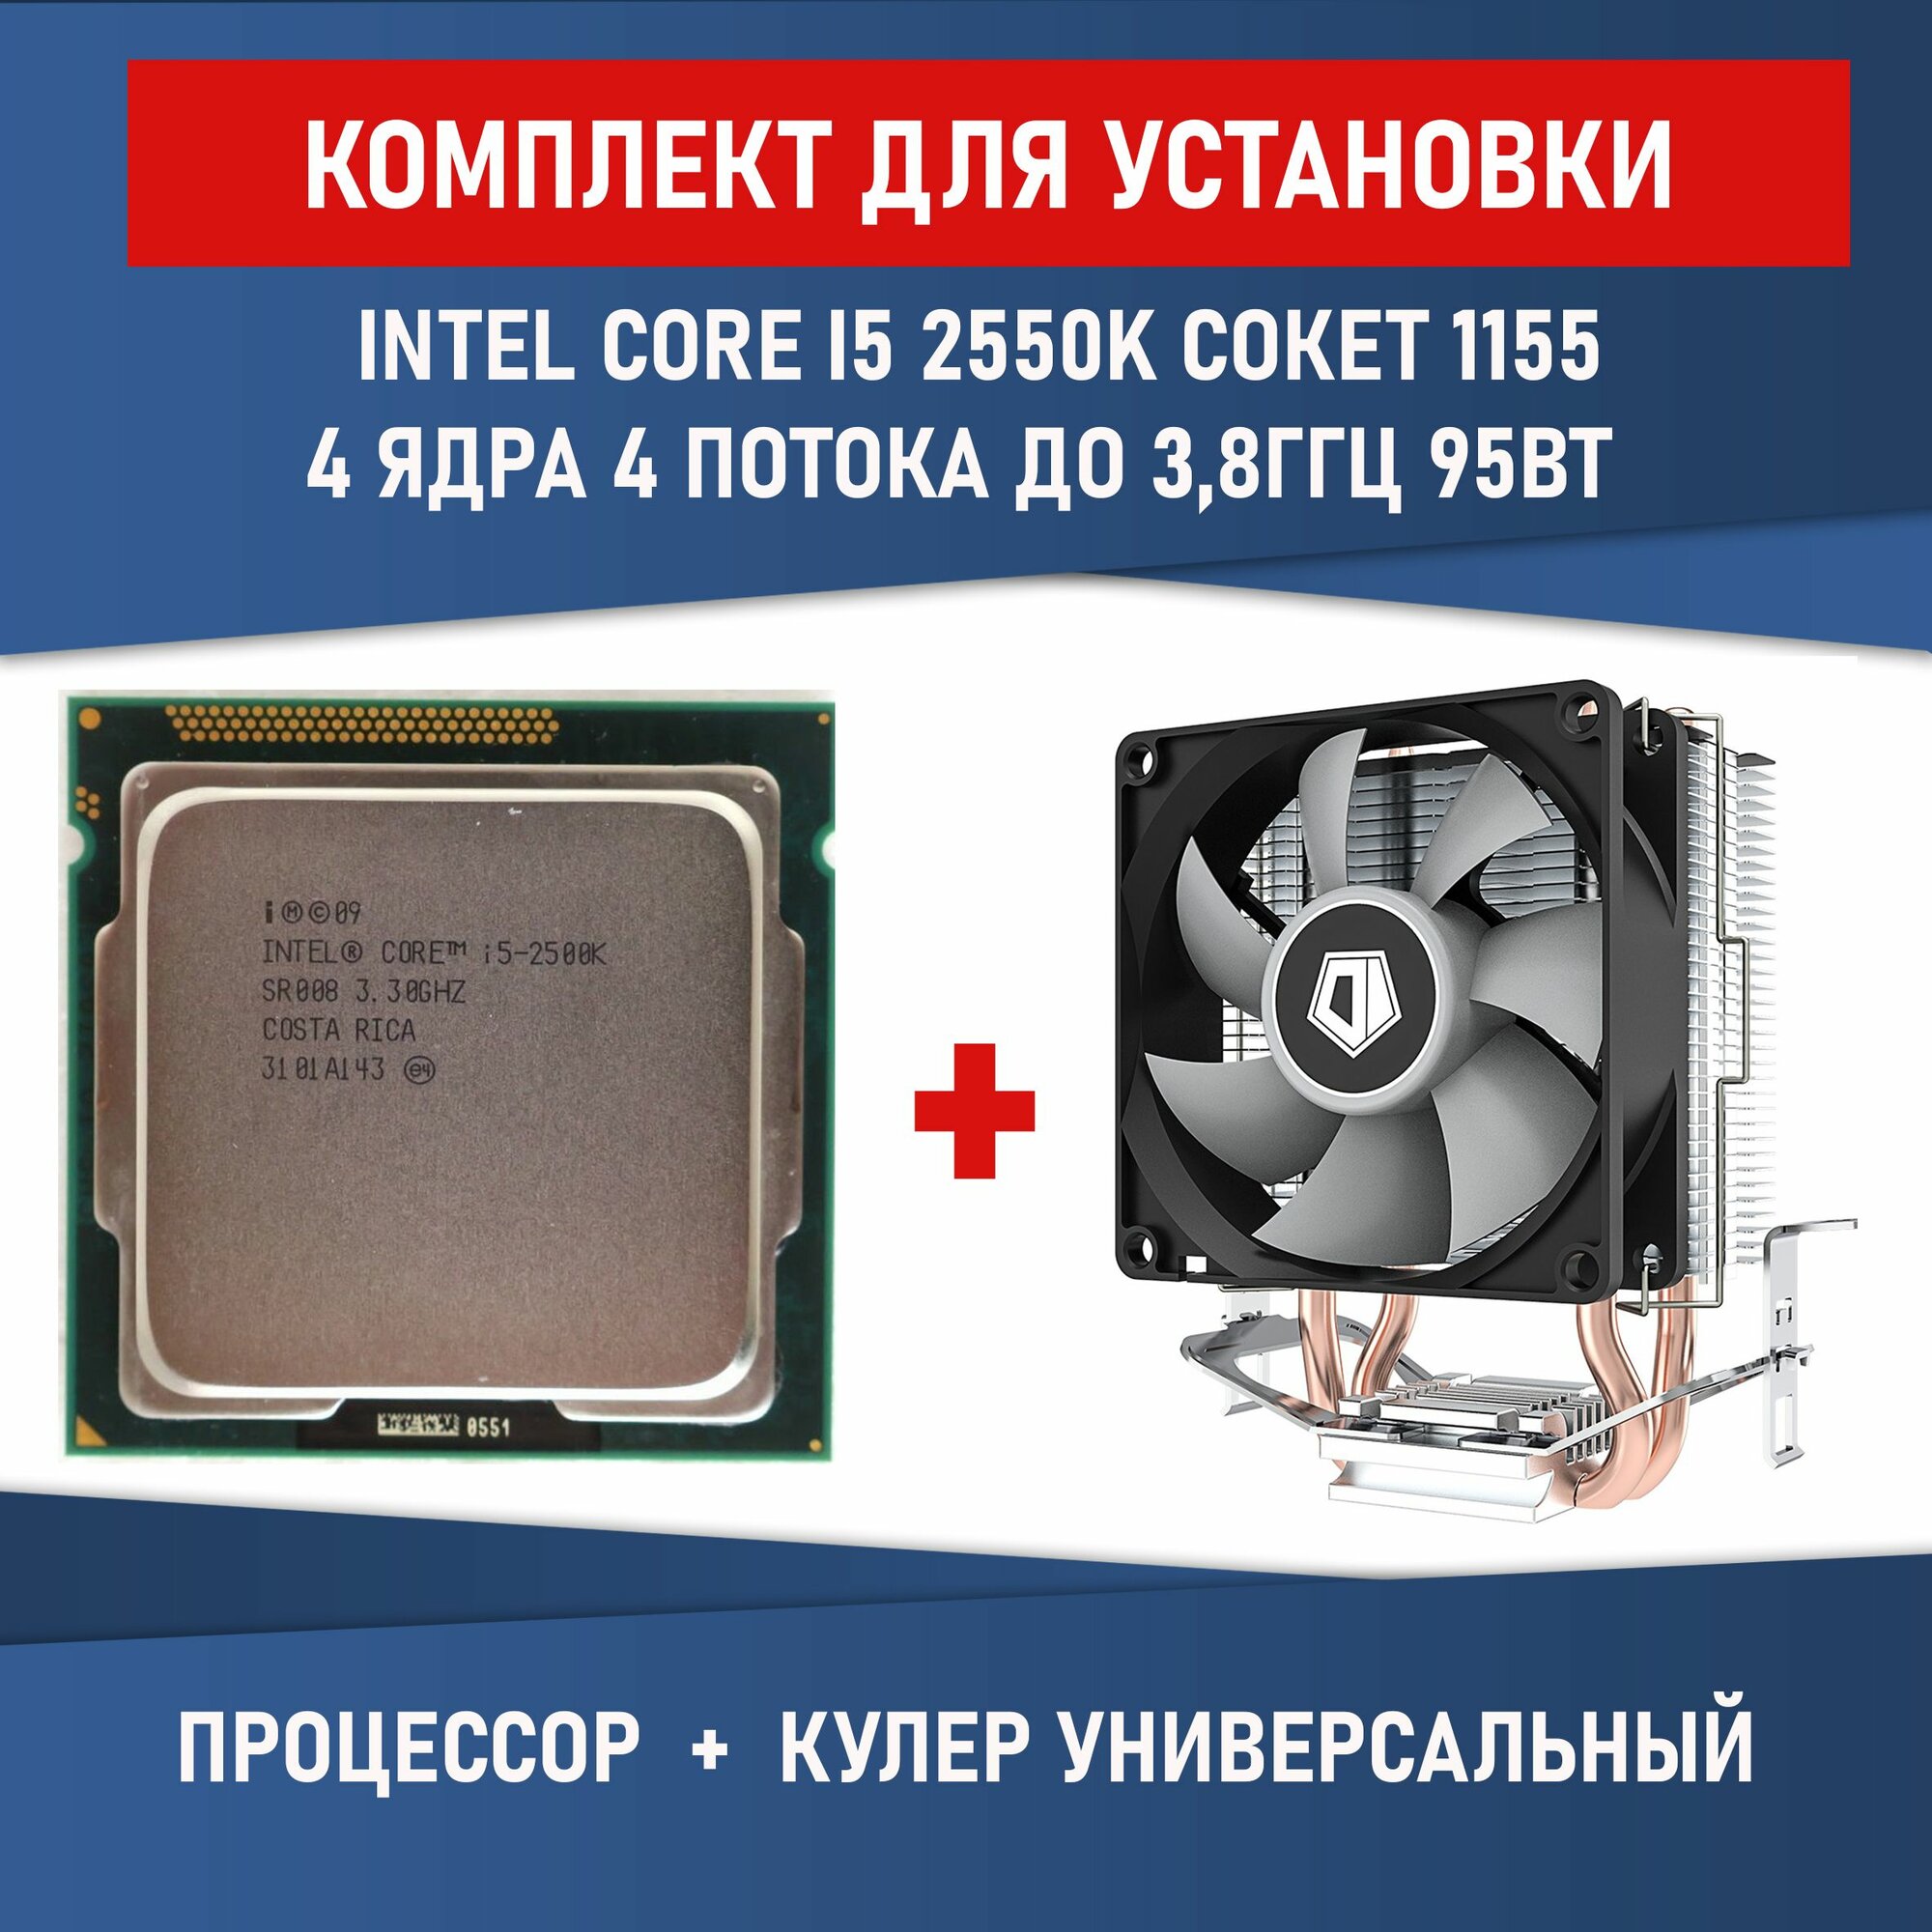 Комплект для установки Процессор Intel Core i5-2550K 4 ядра 4 потокасокет 1155 3300 МГц разблокированный множитель + Кулер ID-COOLING SE-802-SD V3